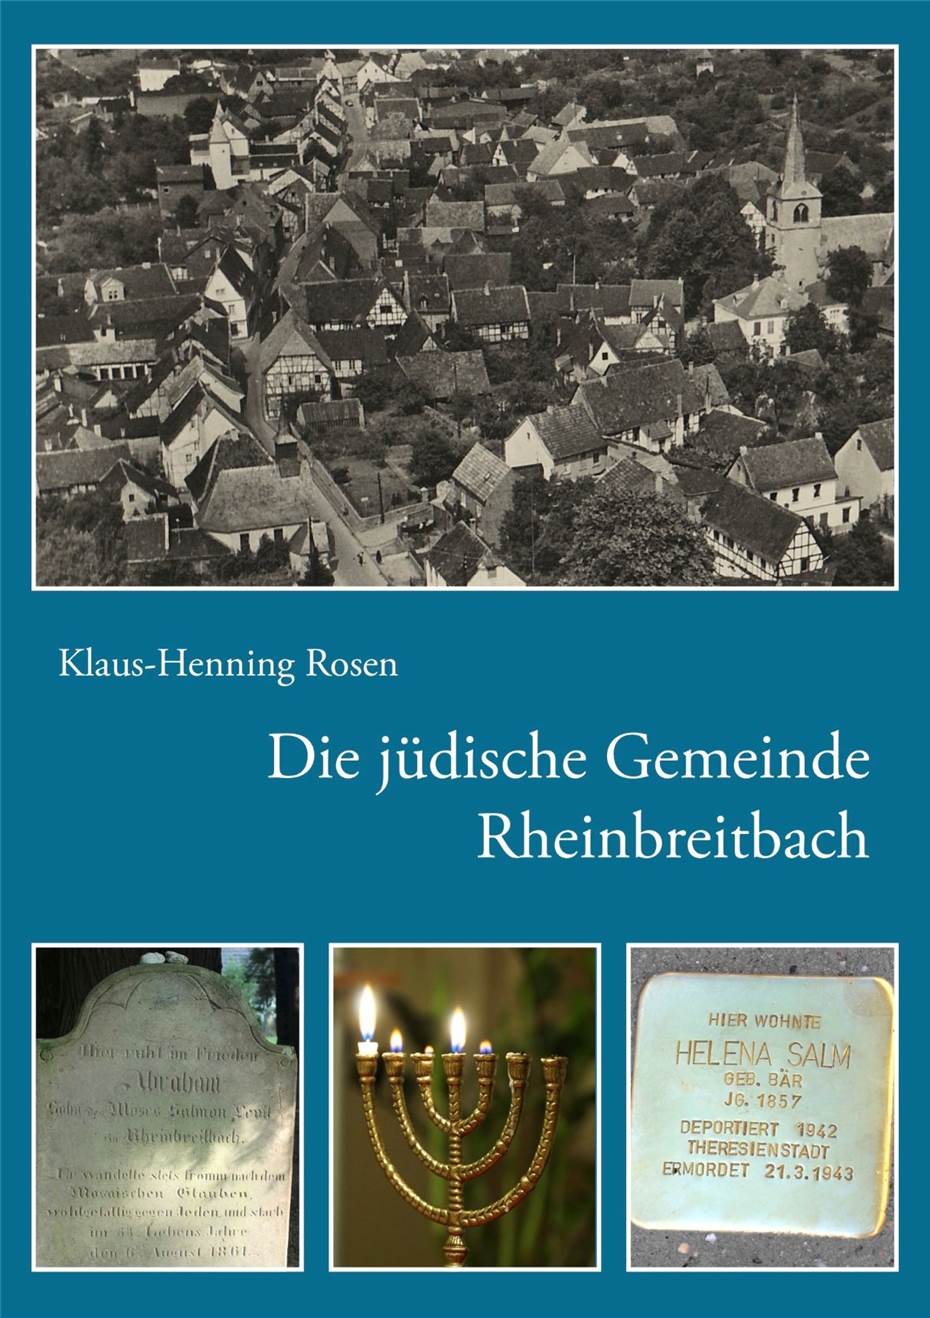 1700 Jahre jüdisches
Leben in Deutschland